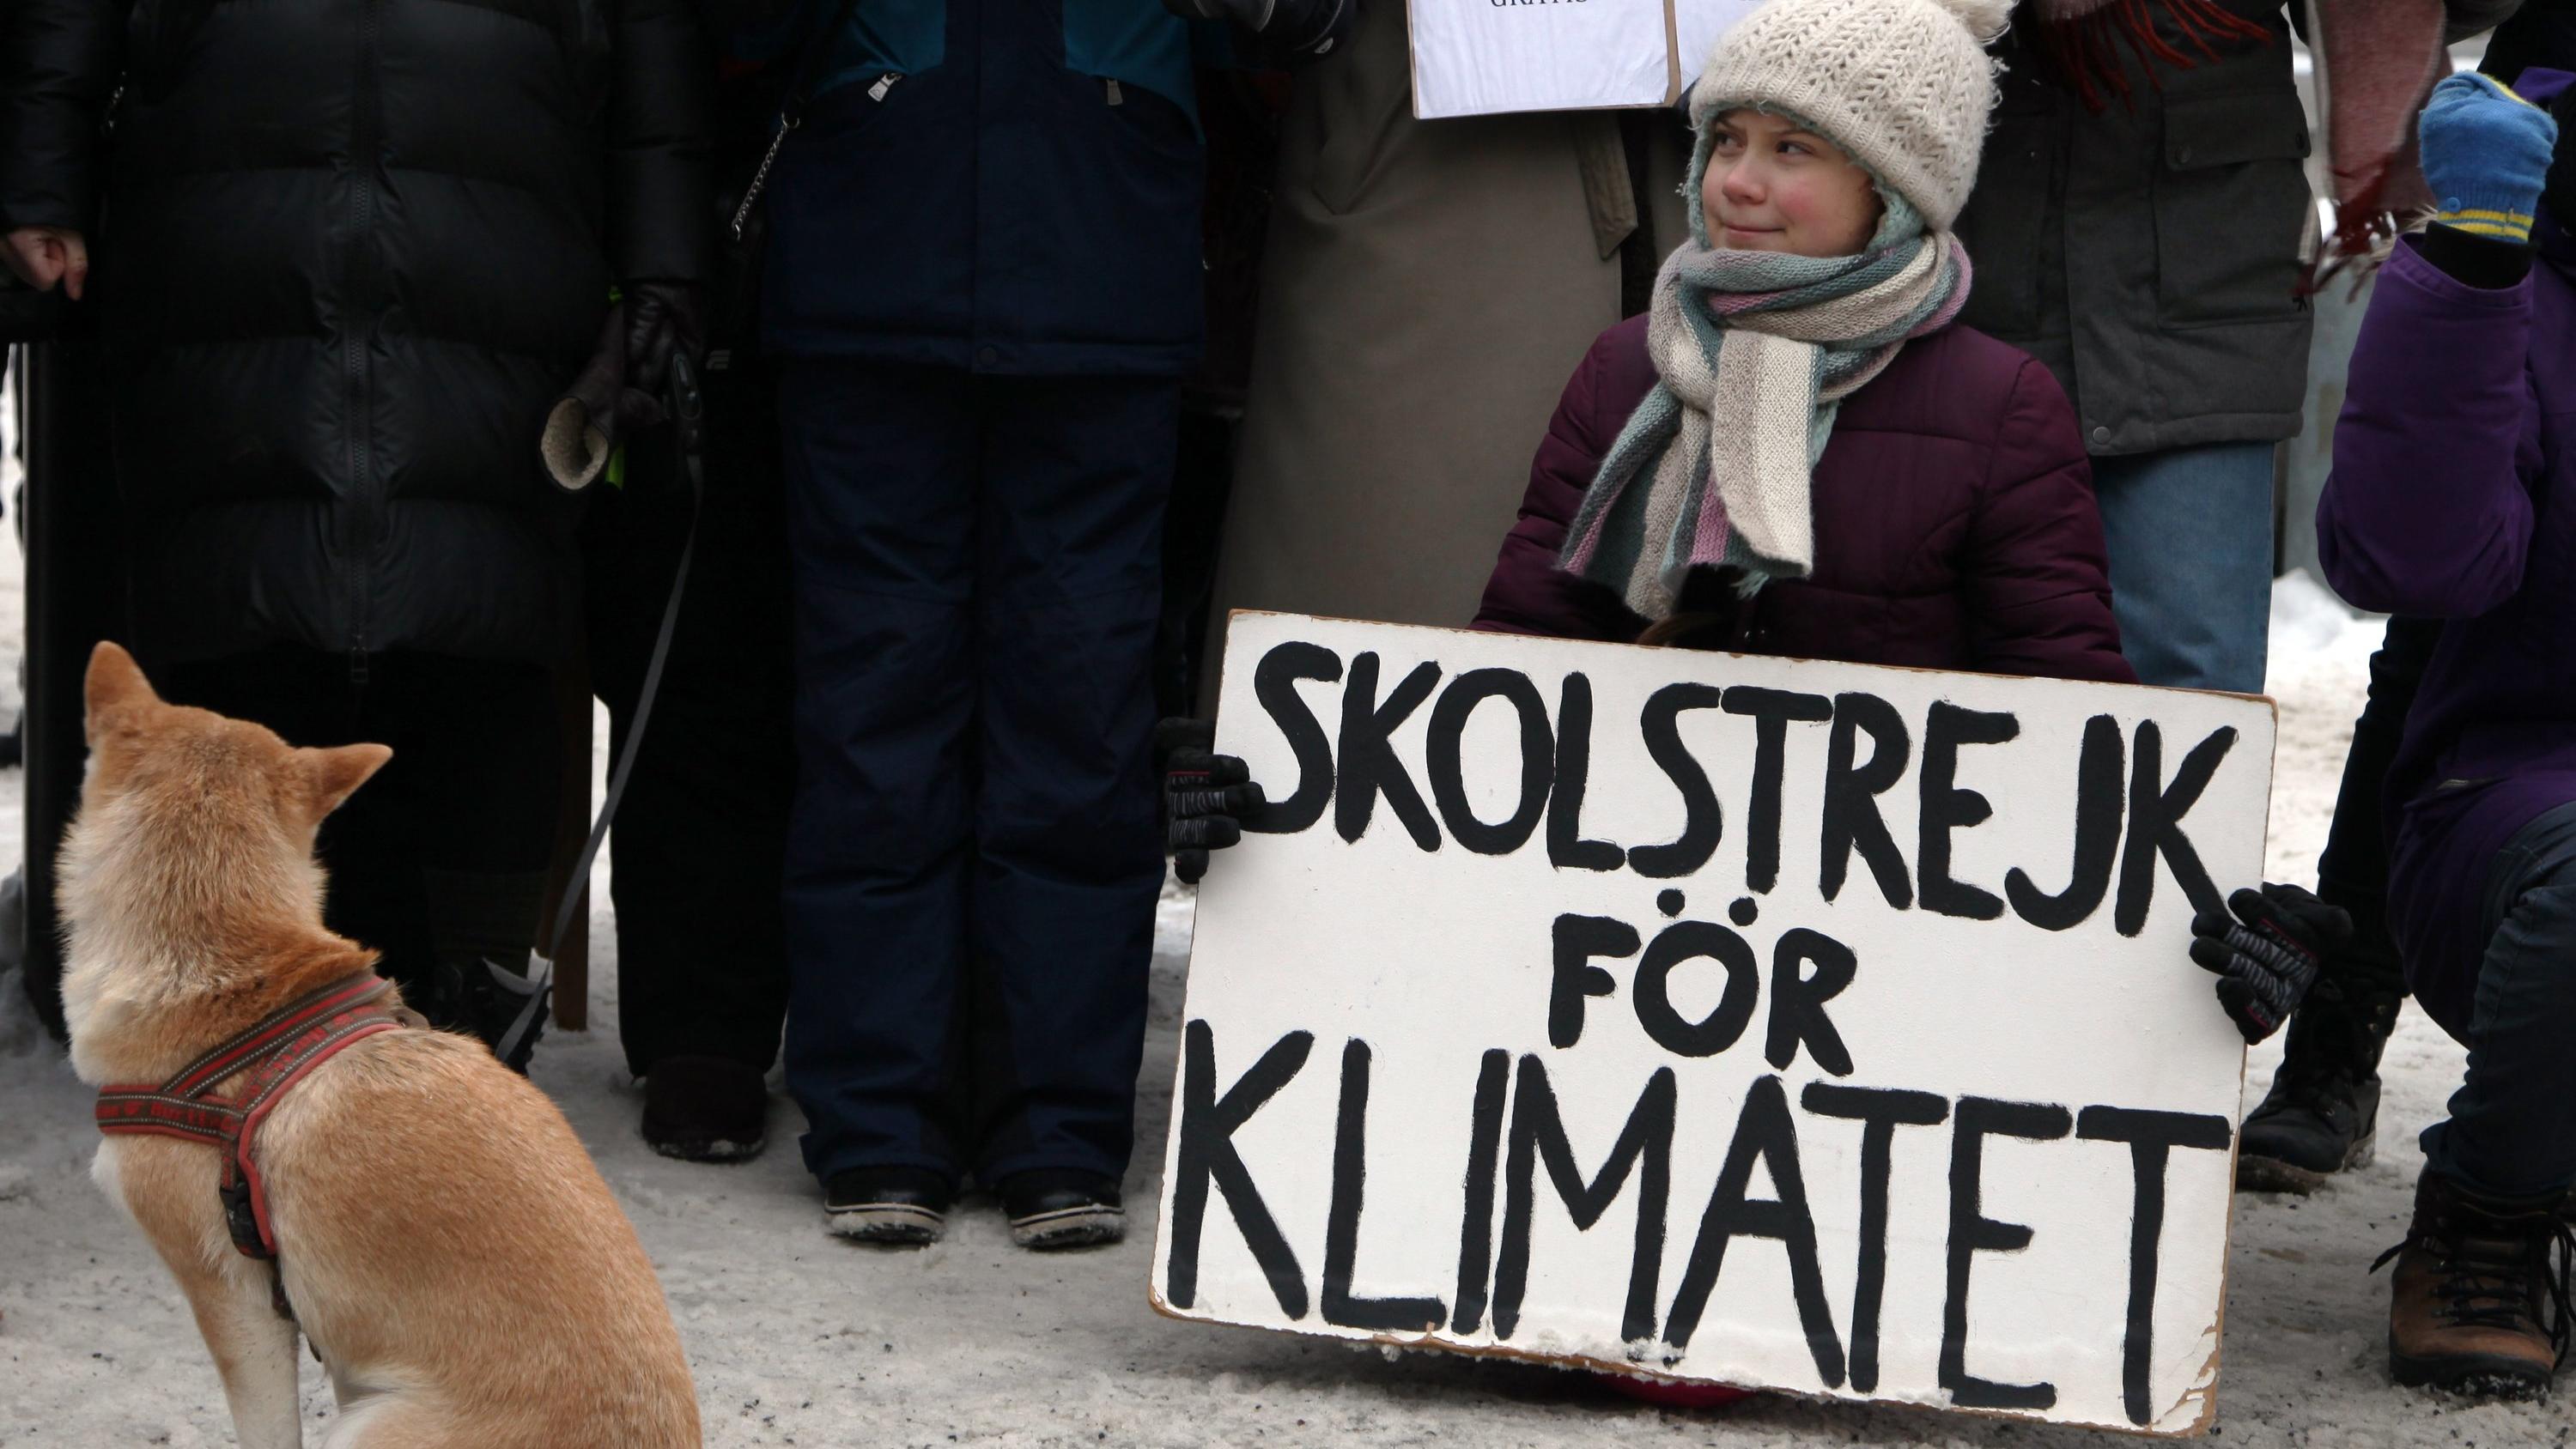 01.02.2019, Schweden, Stockholm: Die 16-jährige Schwedin Greta Thunberg demonstriert vor dem Reichstag in Stockholm für mehr Klimaschutz mit einem Plakat "skolstrejk for klimatet" (Schulstreik für das Klima). (zu dpa-Story - Jugendproteste vom 07.02.